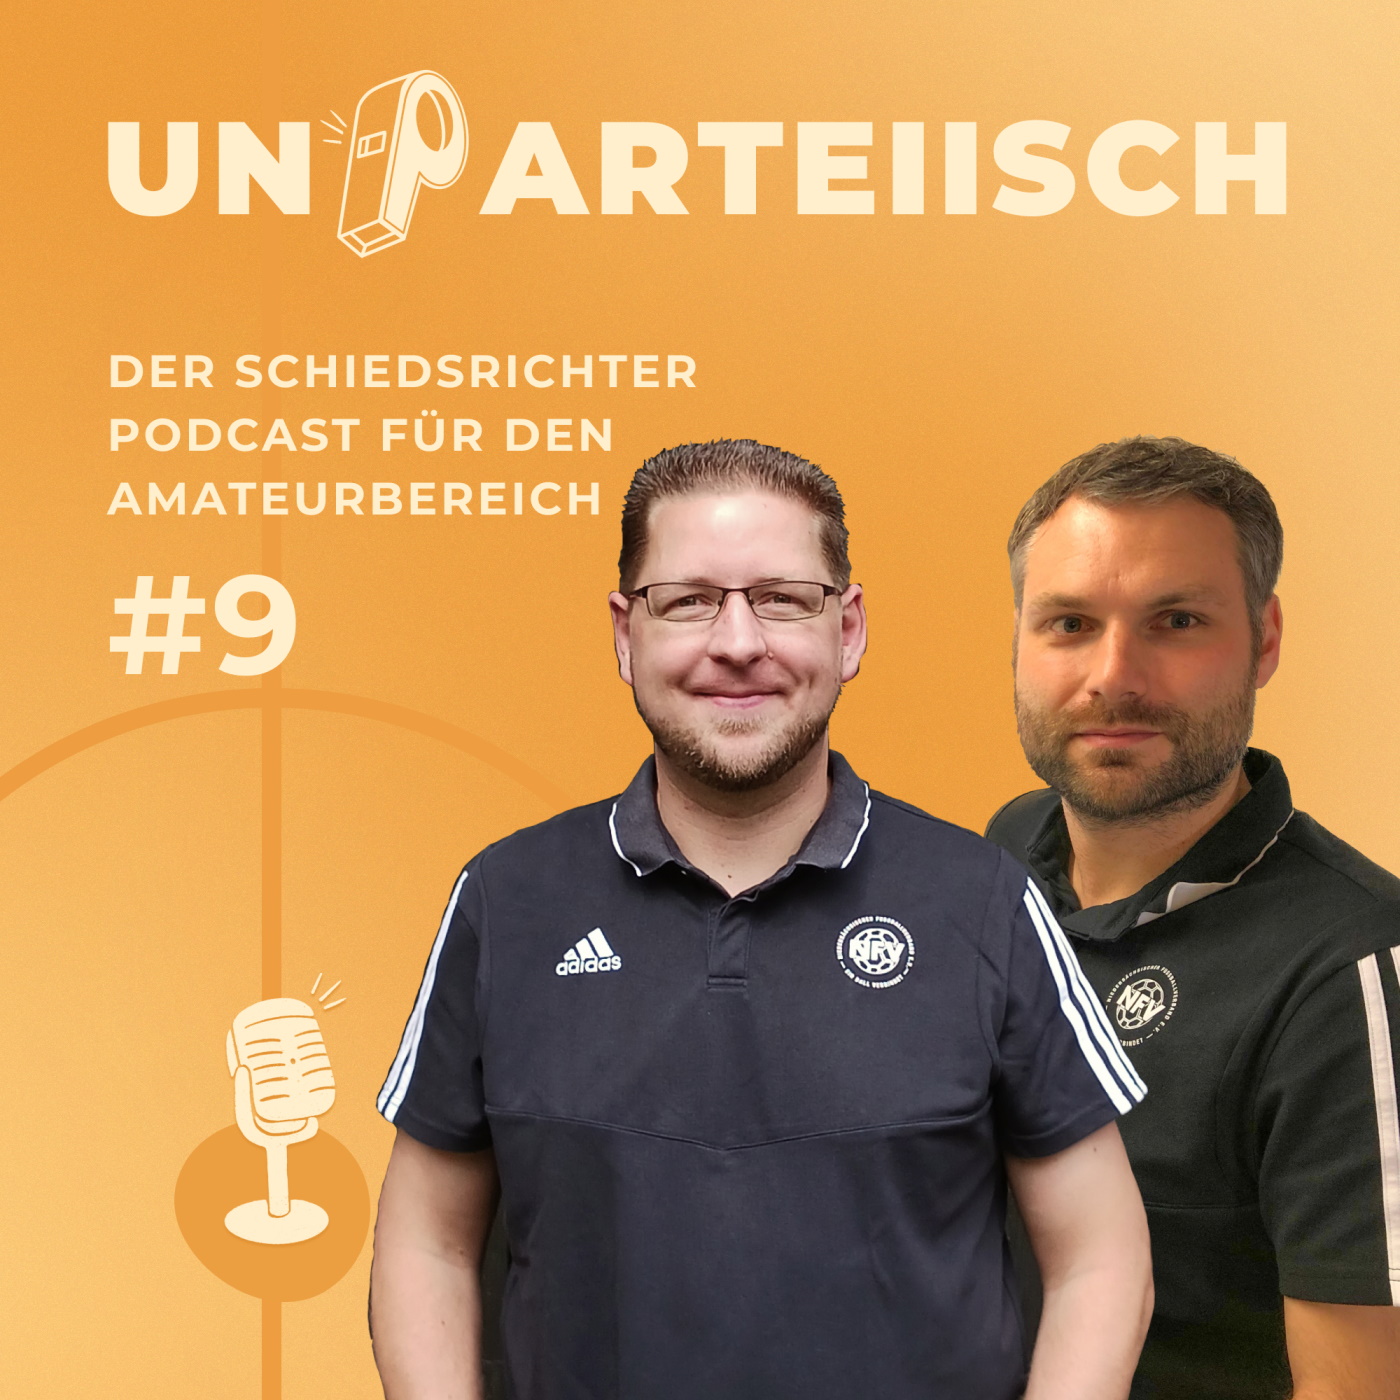 #9 Die Respektbox aus Gifhorn – Doppelinterview mit Dennis Laeseke und Sven Bärensprung